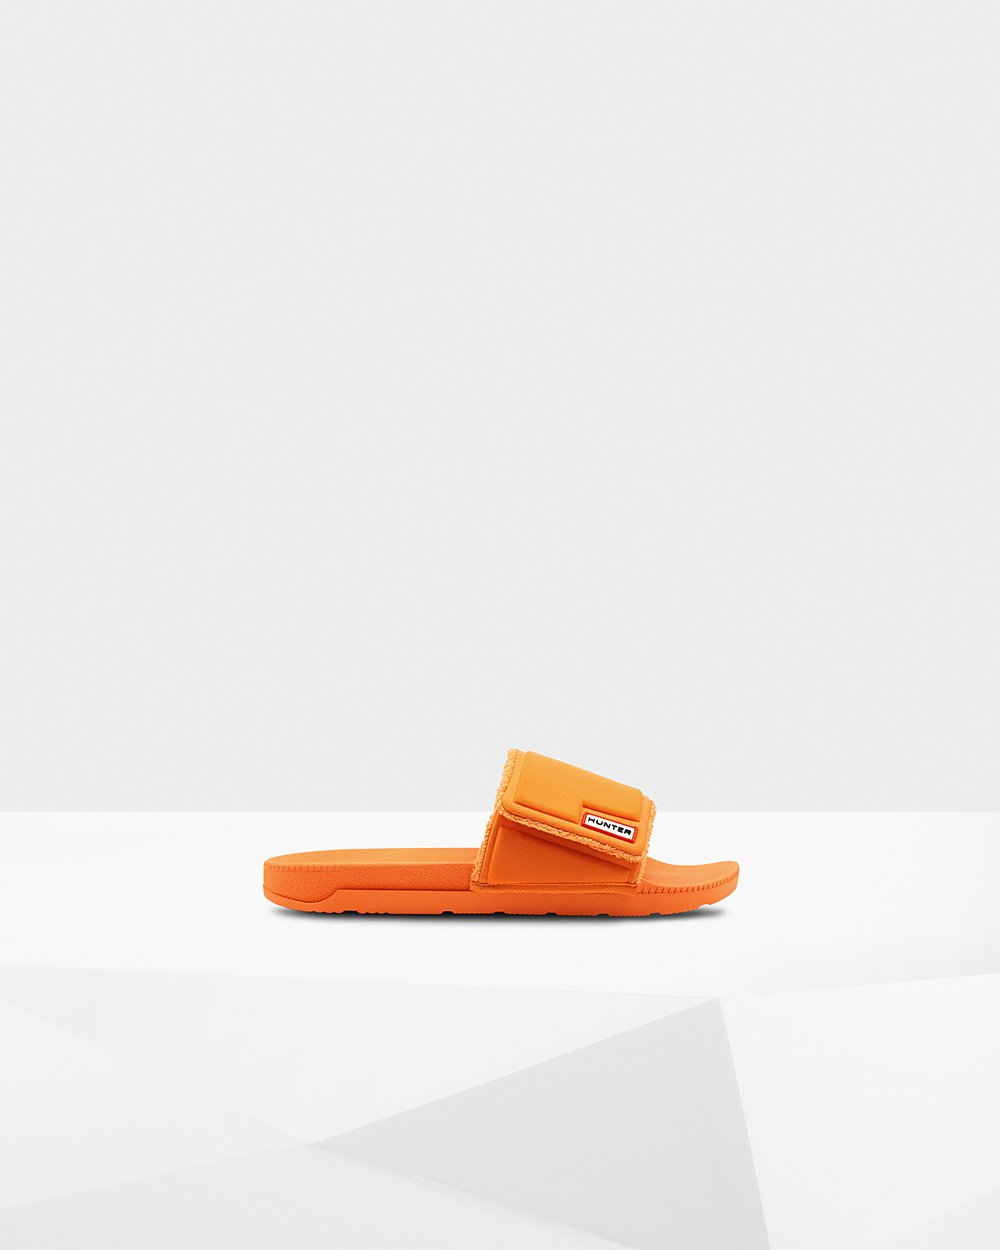 Mens Slides - Hunter Original Adjustable (65OBNAXCH) - Orange